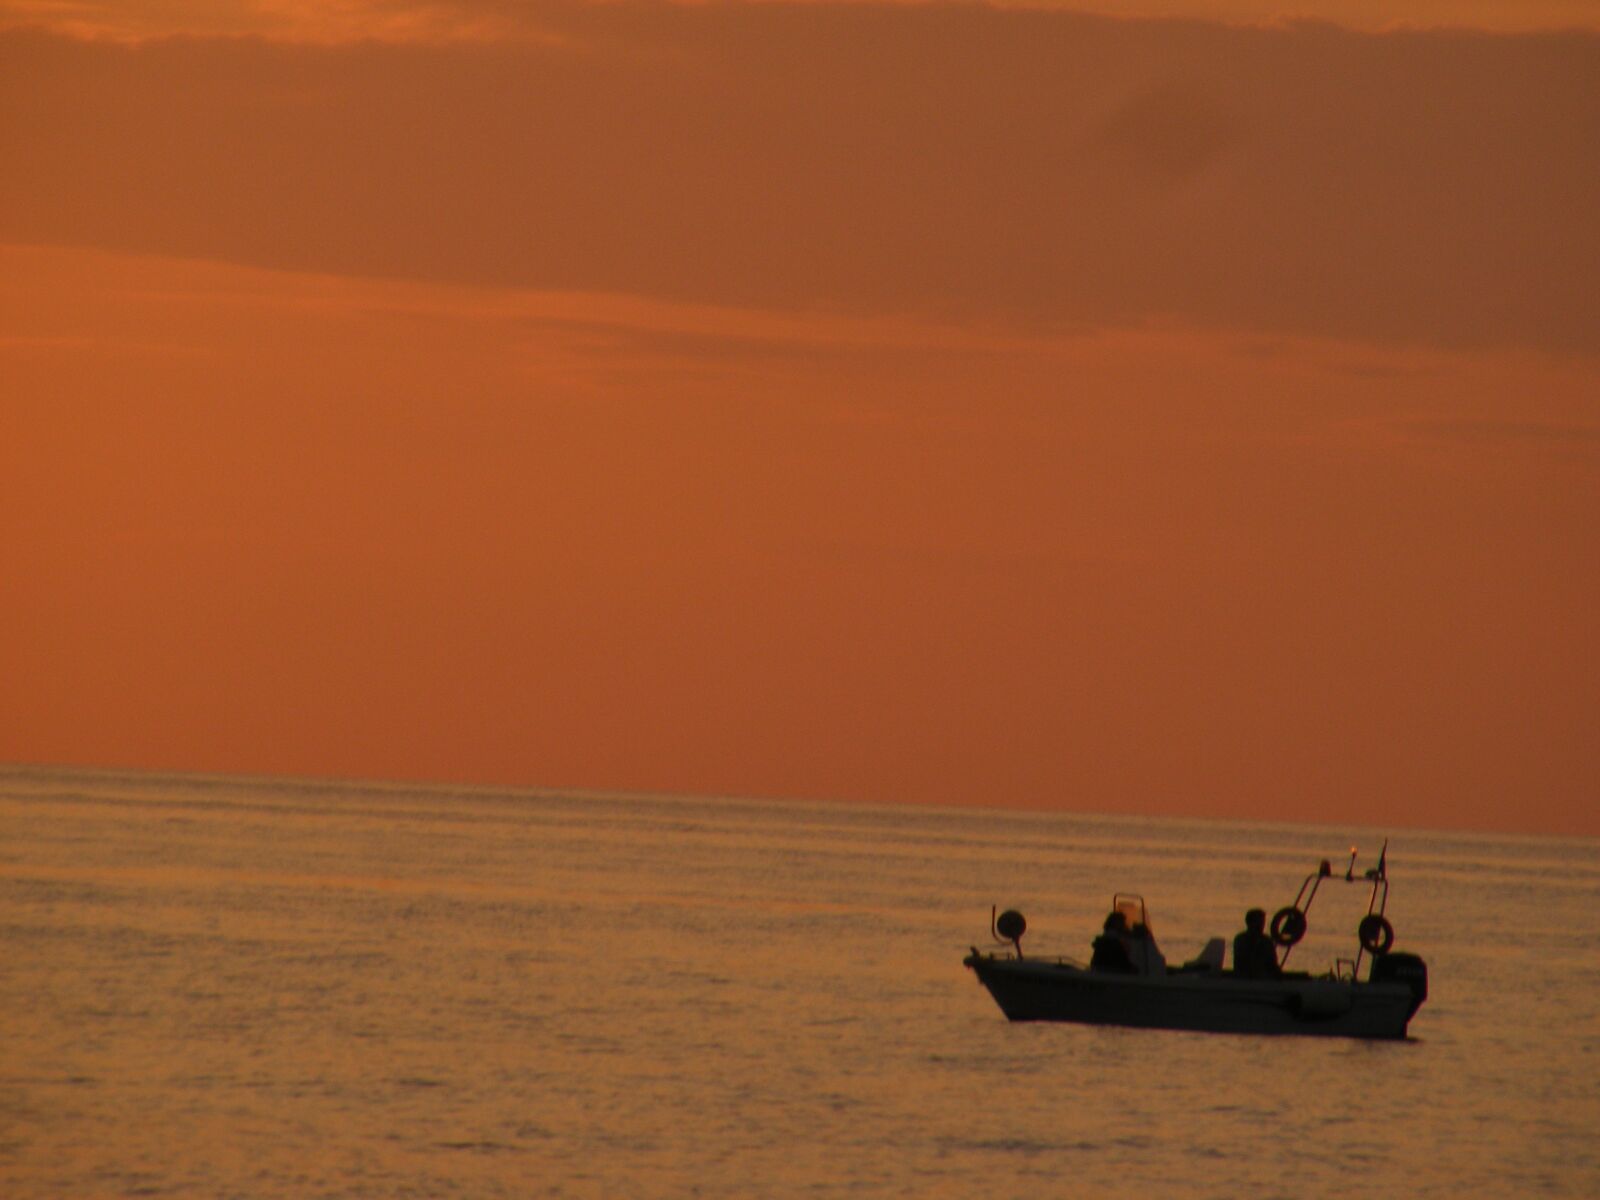 Fujifilm FinePix S5700 S700 sample photo. Fishing boat, sunset, dusk photography